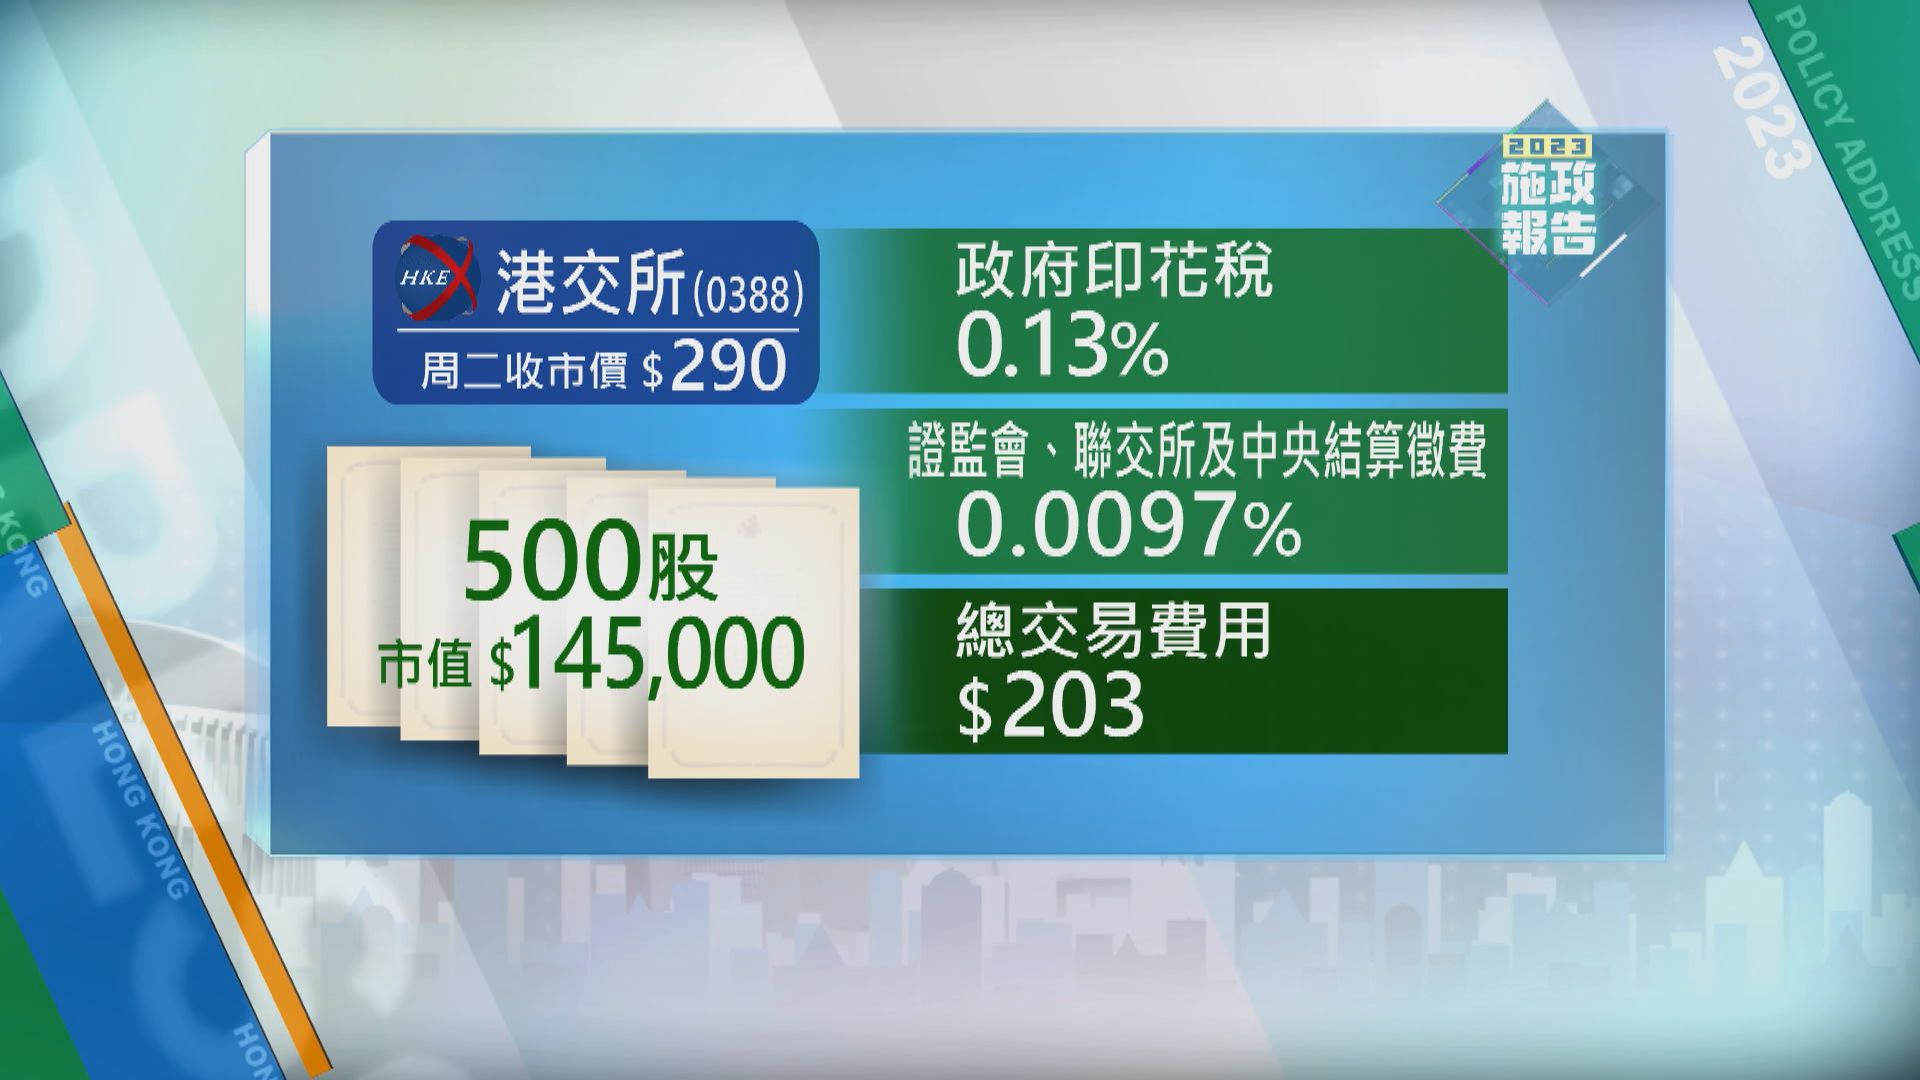 【施政報告】股票印花稅率由0.13%降至0.1%